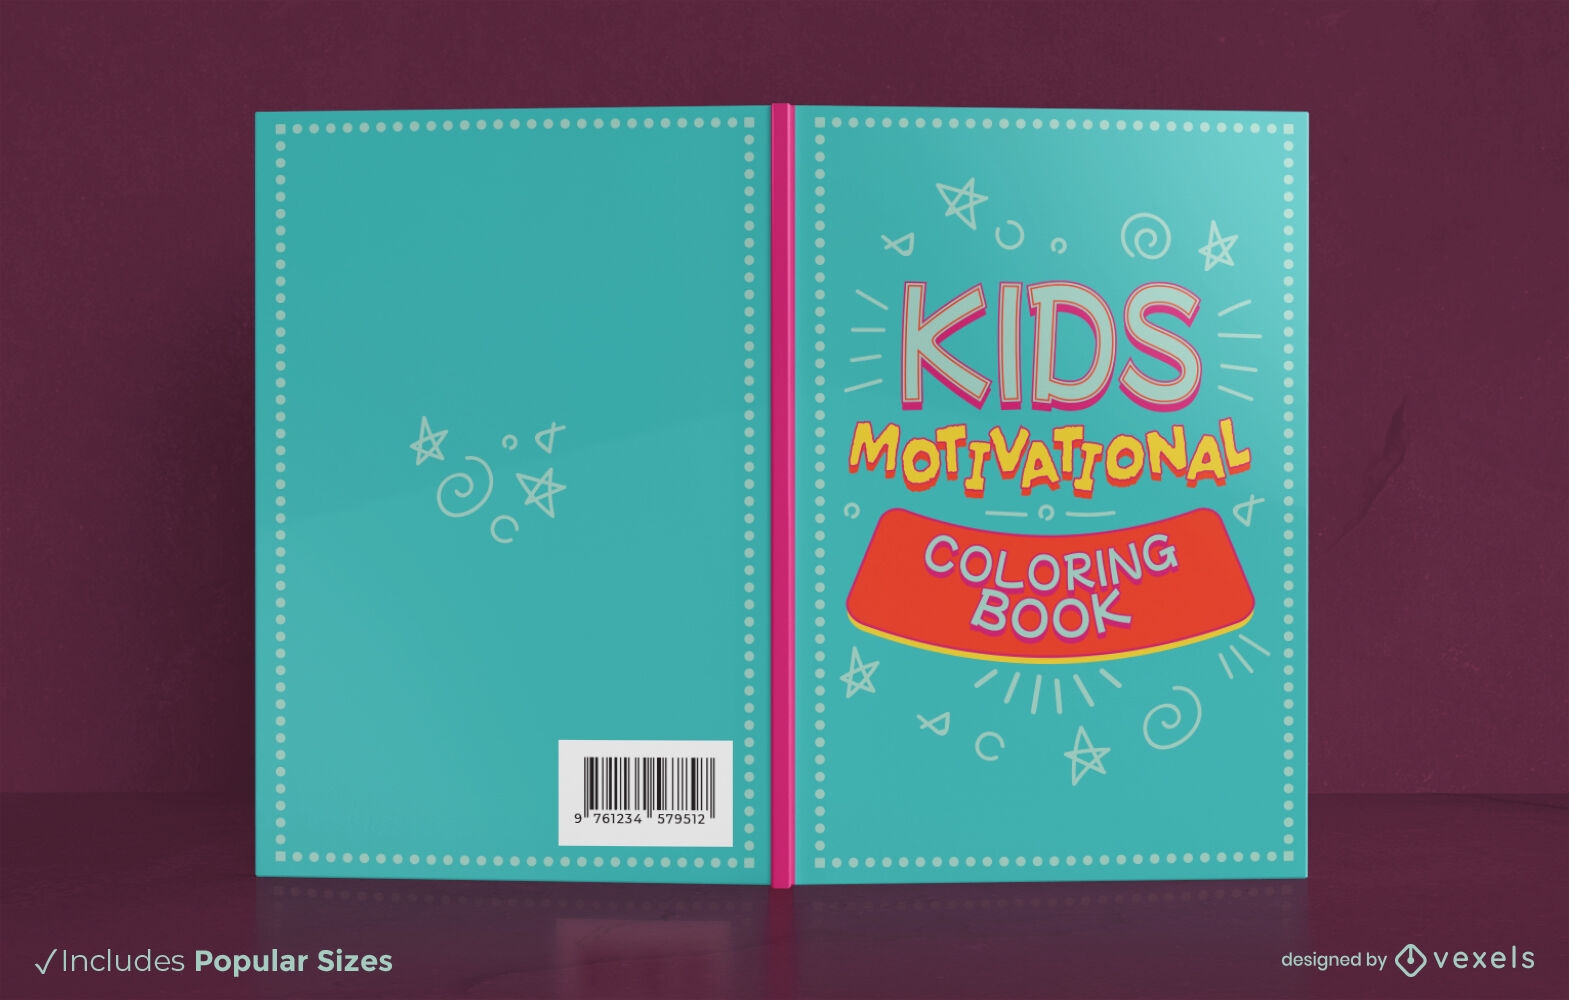 Dise?o de portada de libro para colorear de motivaci?n para ni?os